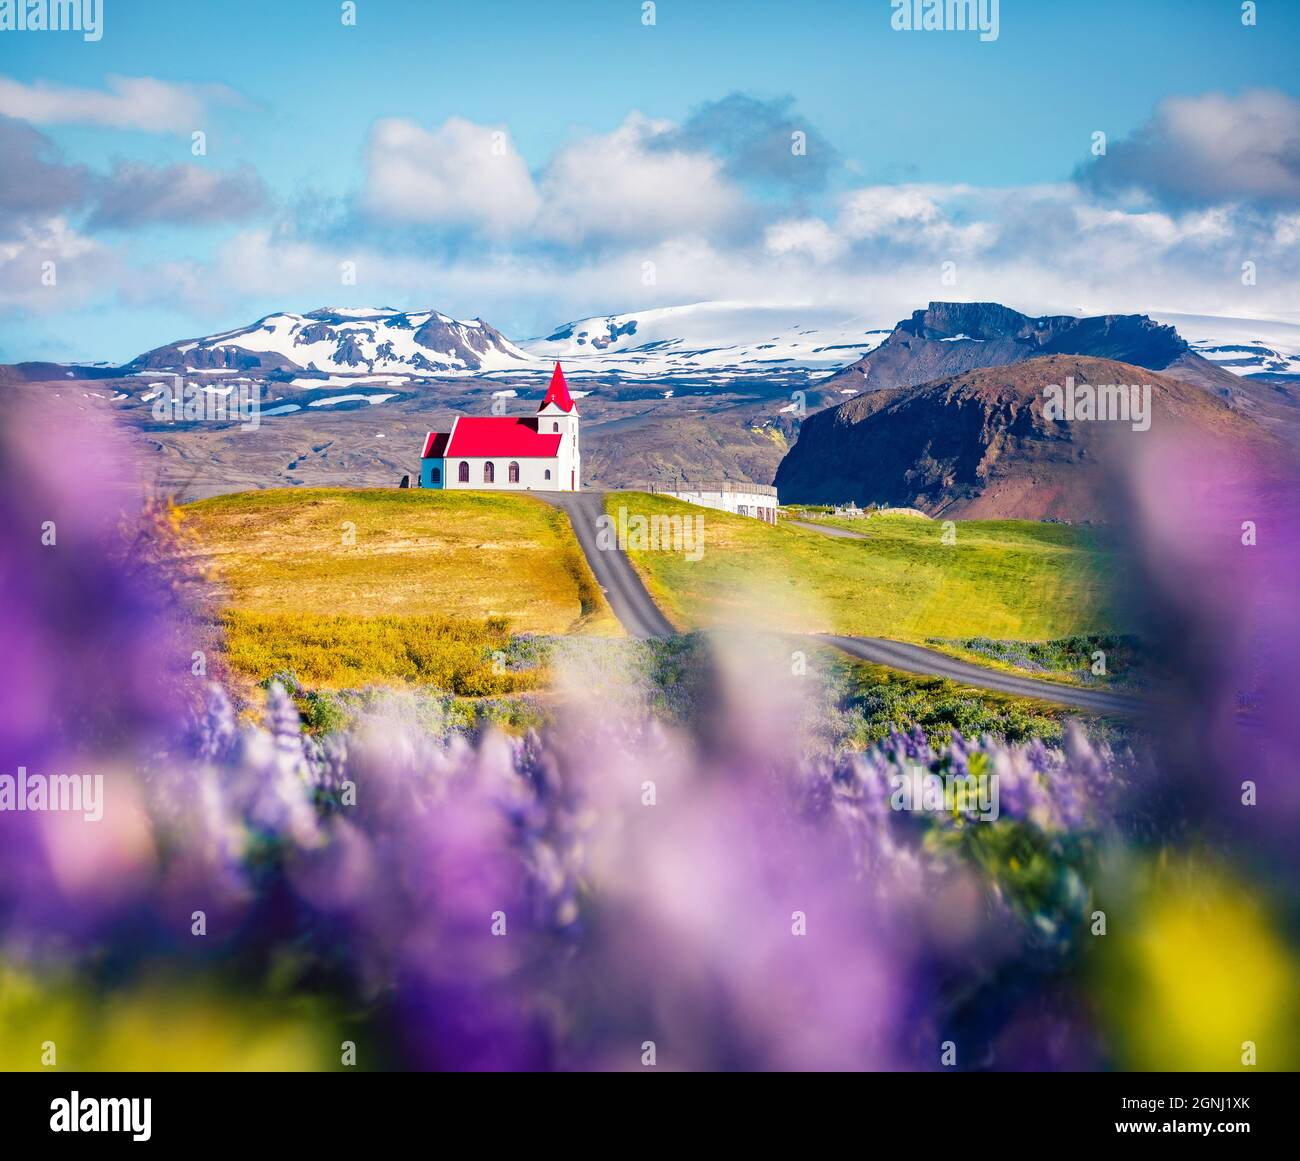 Magnifique vue du matin sur l'église emblématique de glace - Ingjaldsholl. Scène estivale lumineuse de l'Islande avec champ de fleurs lupin et montagnes enneigées Banque D'Images